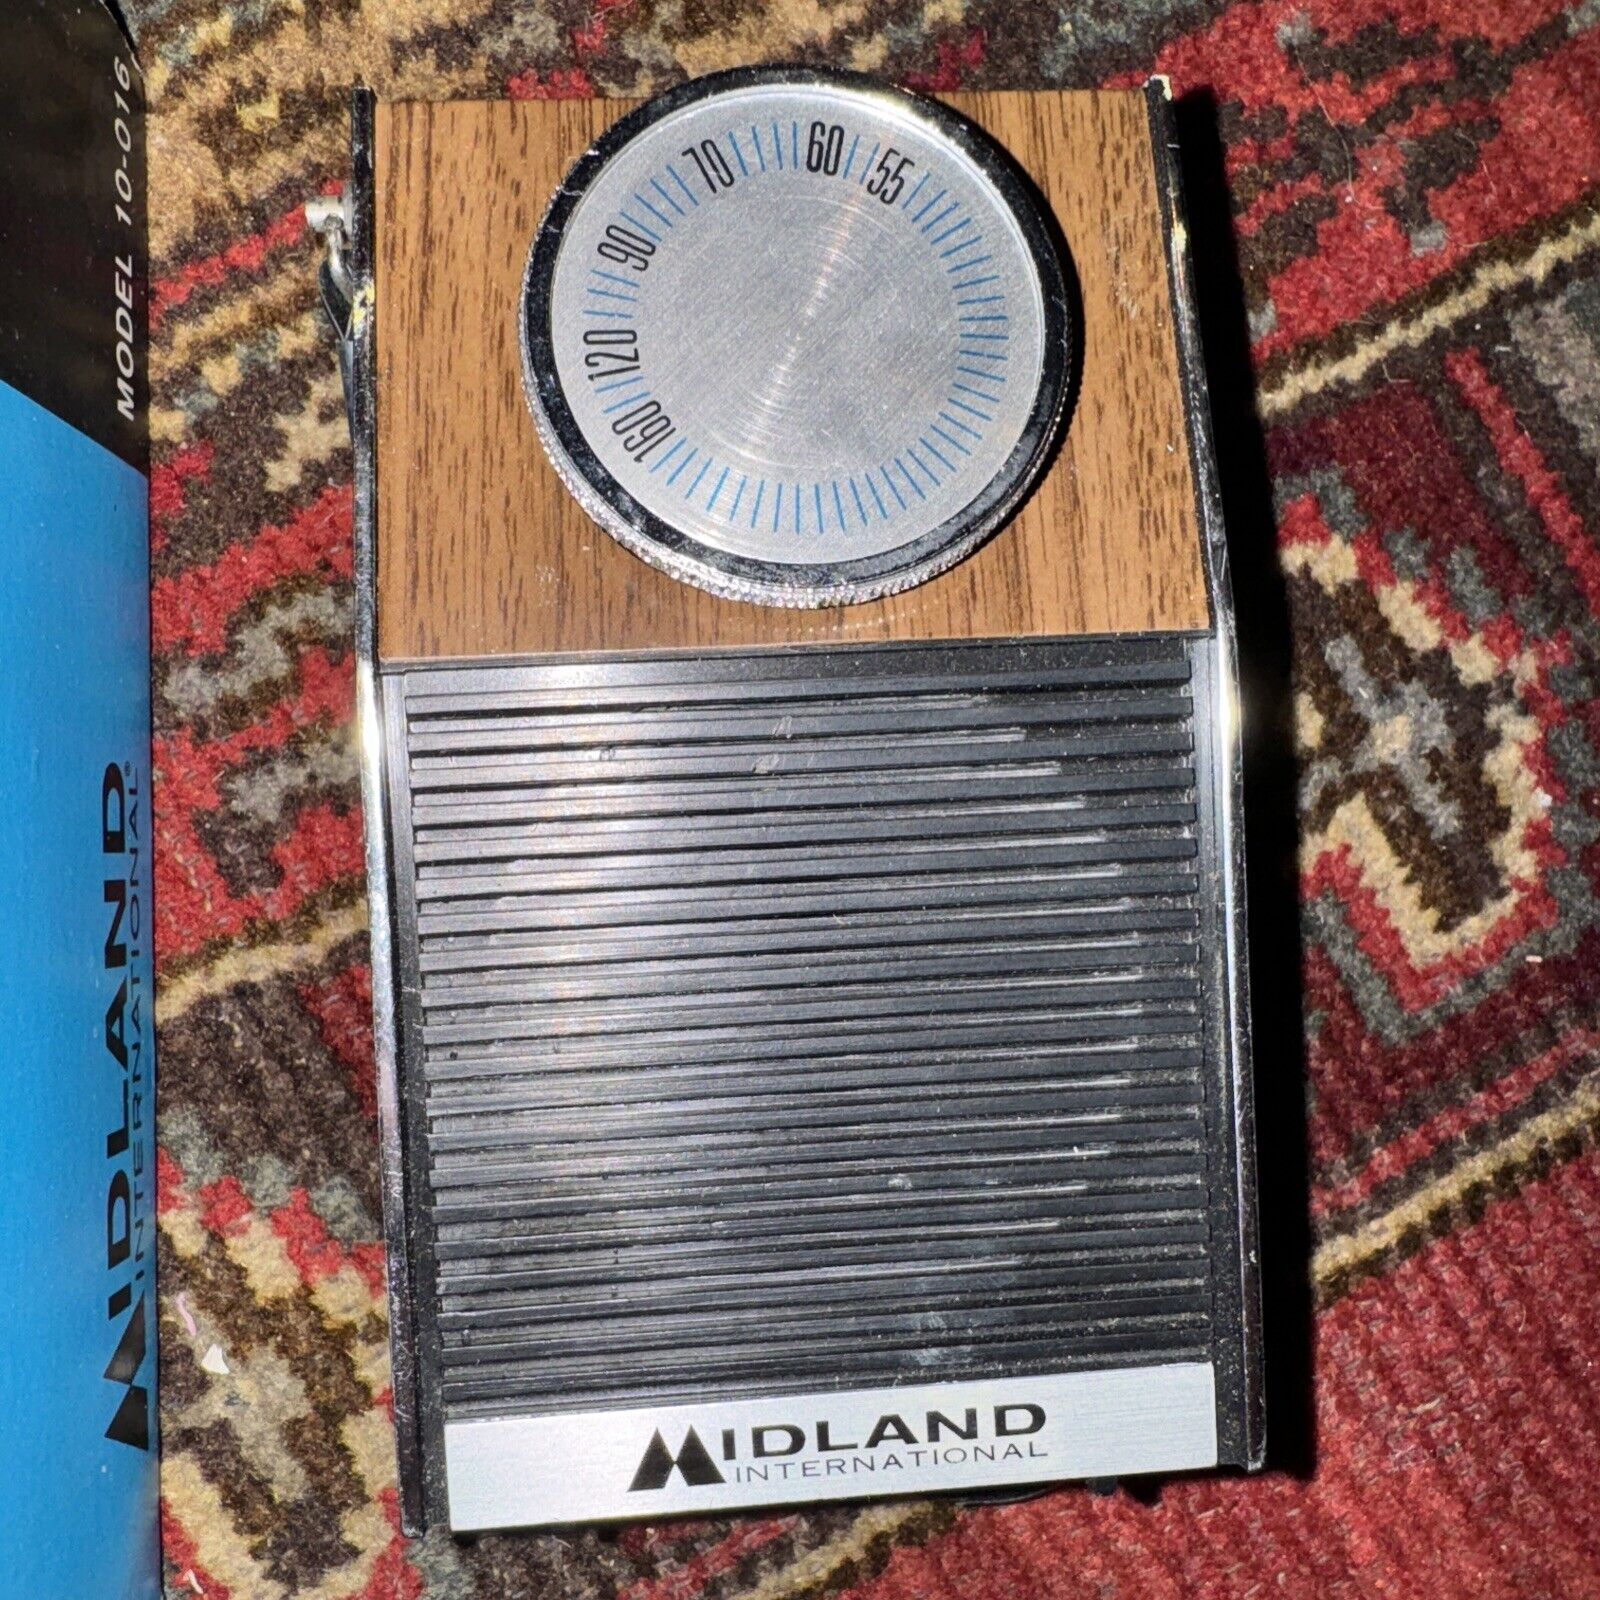 1969 Midland International Pocket Radio M: 10-016 - Solid State - Vintage Rare